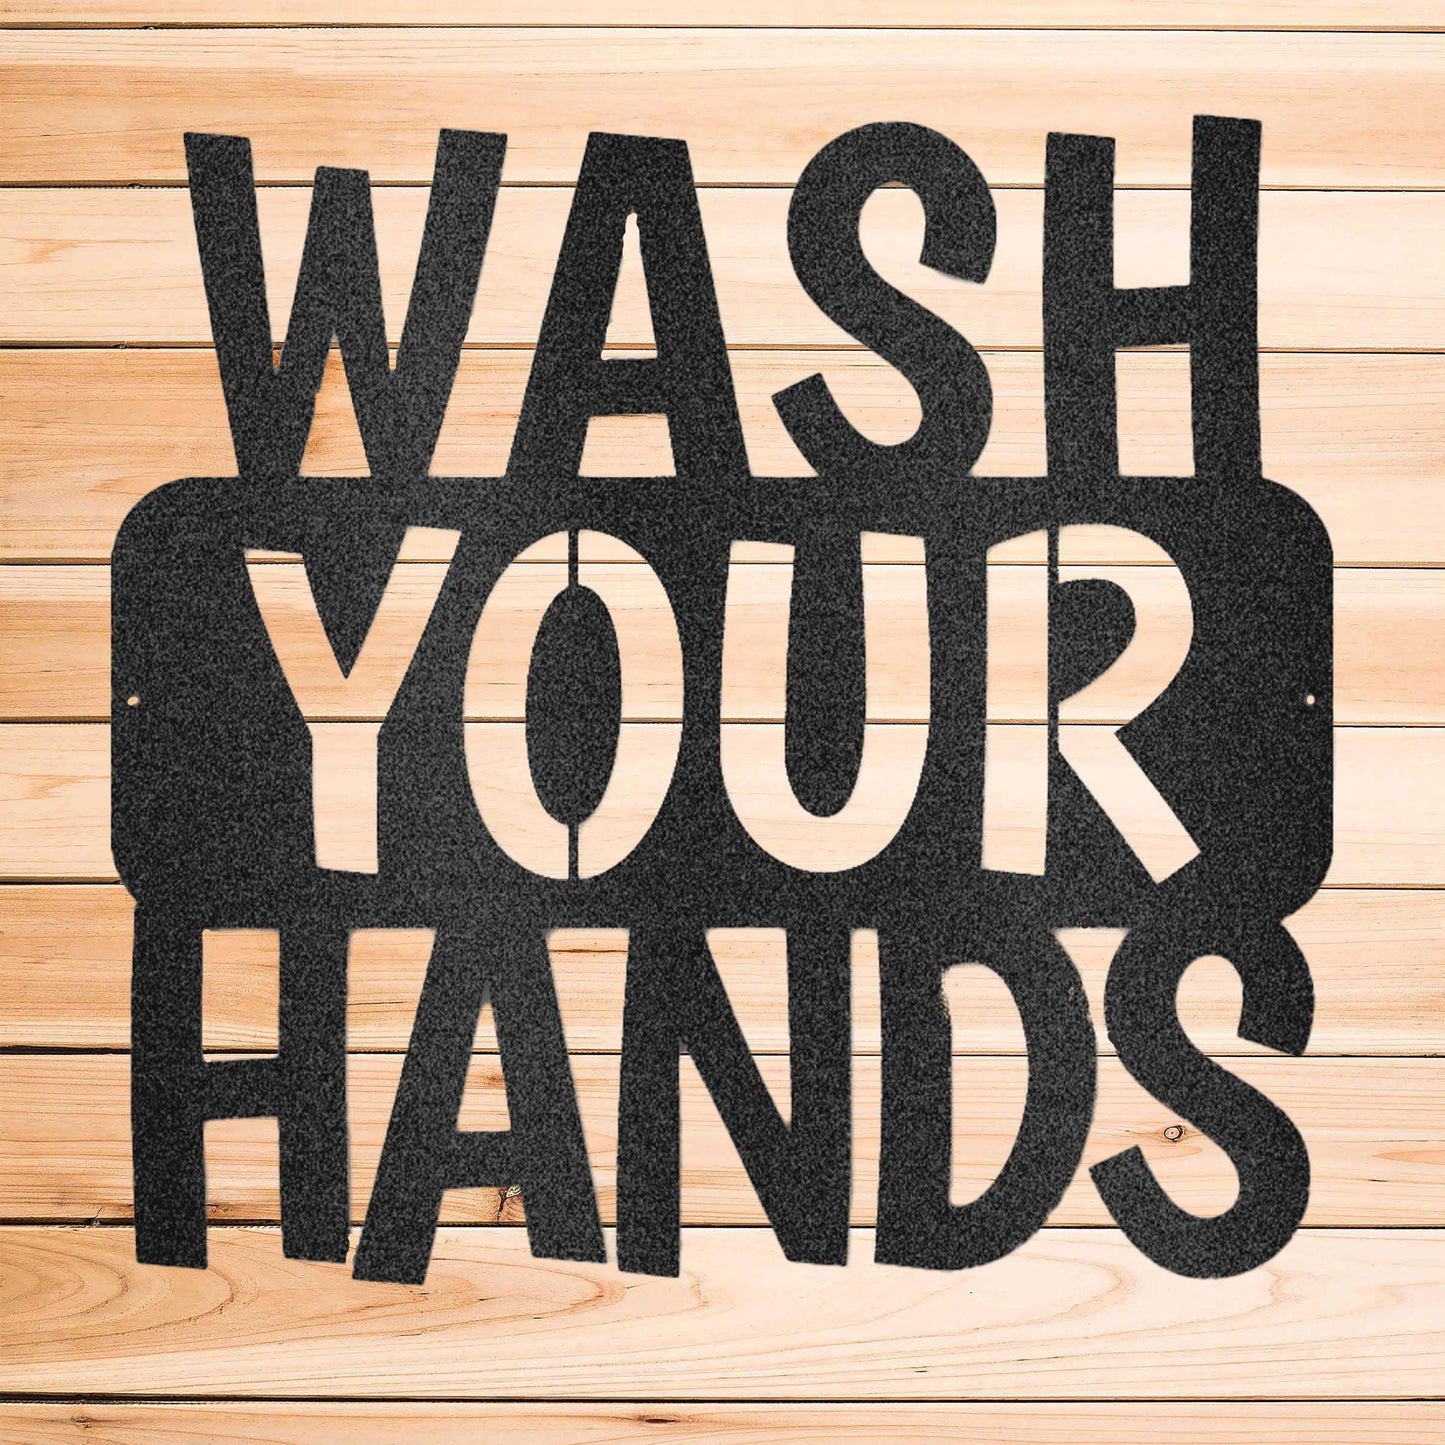 Wash Your Hands Quote Indoor Outdoor Steel Wall Sign - Mallard Moon Gift Shop